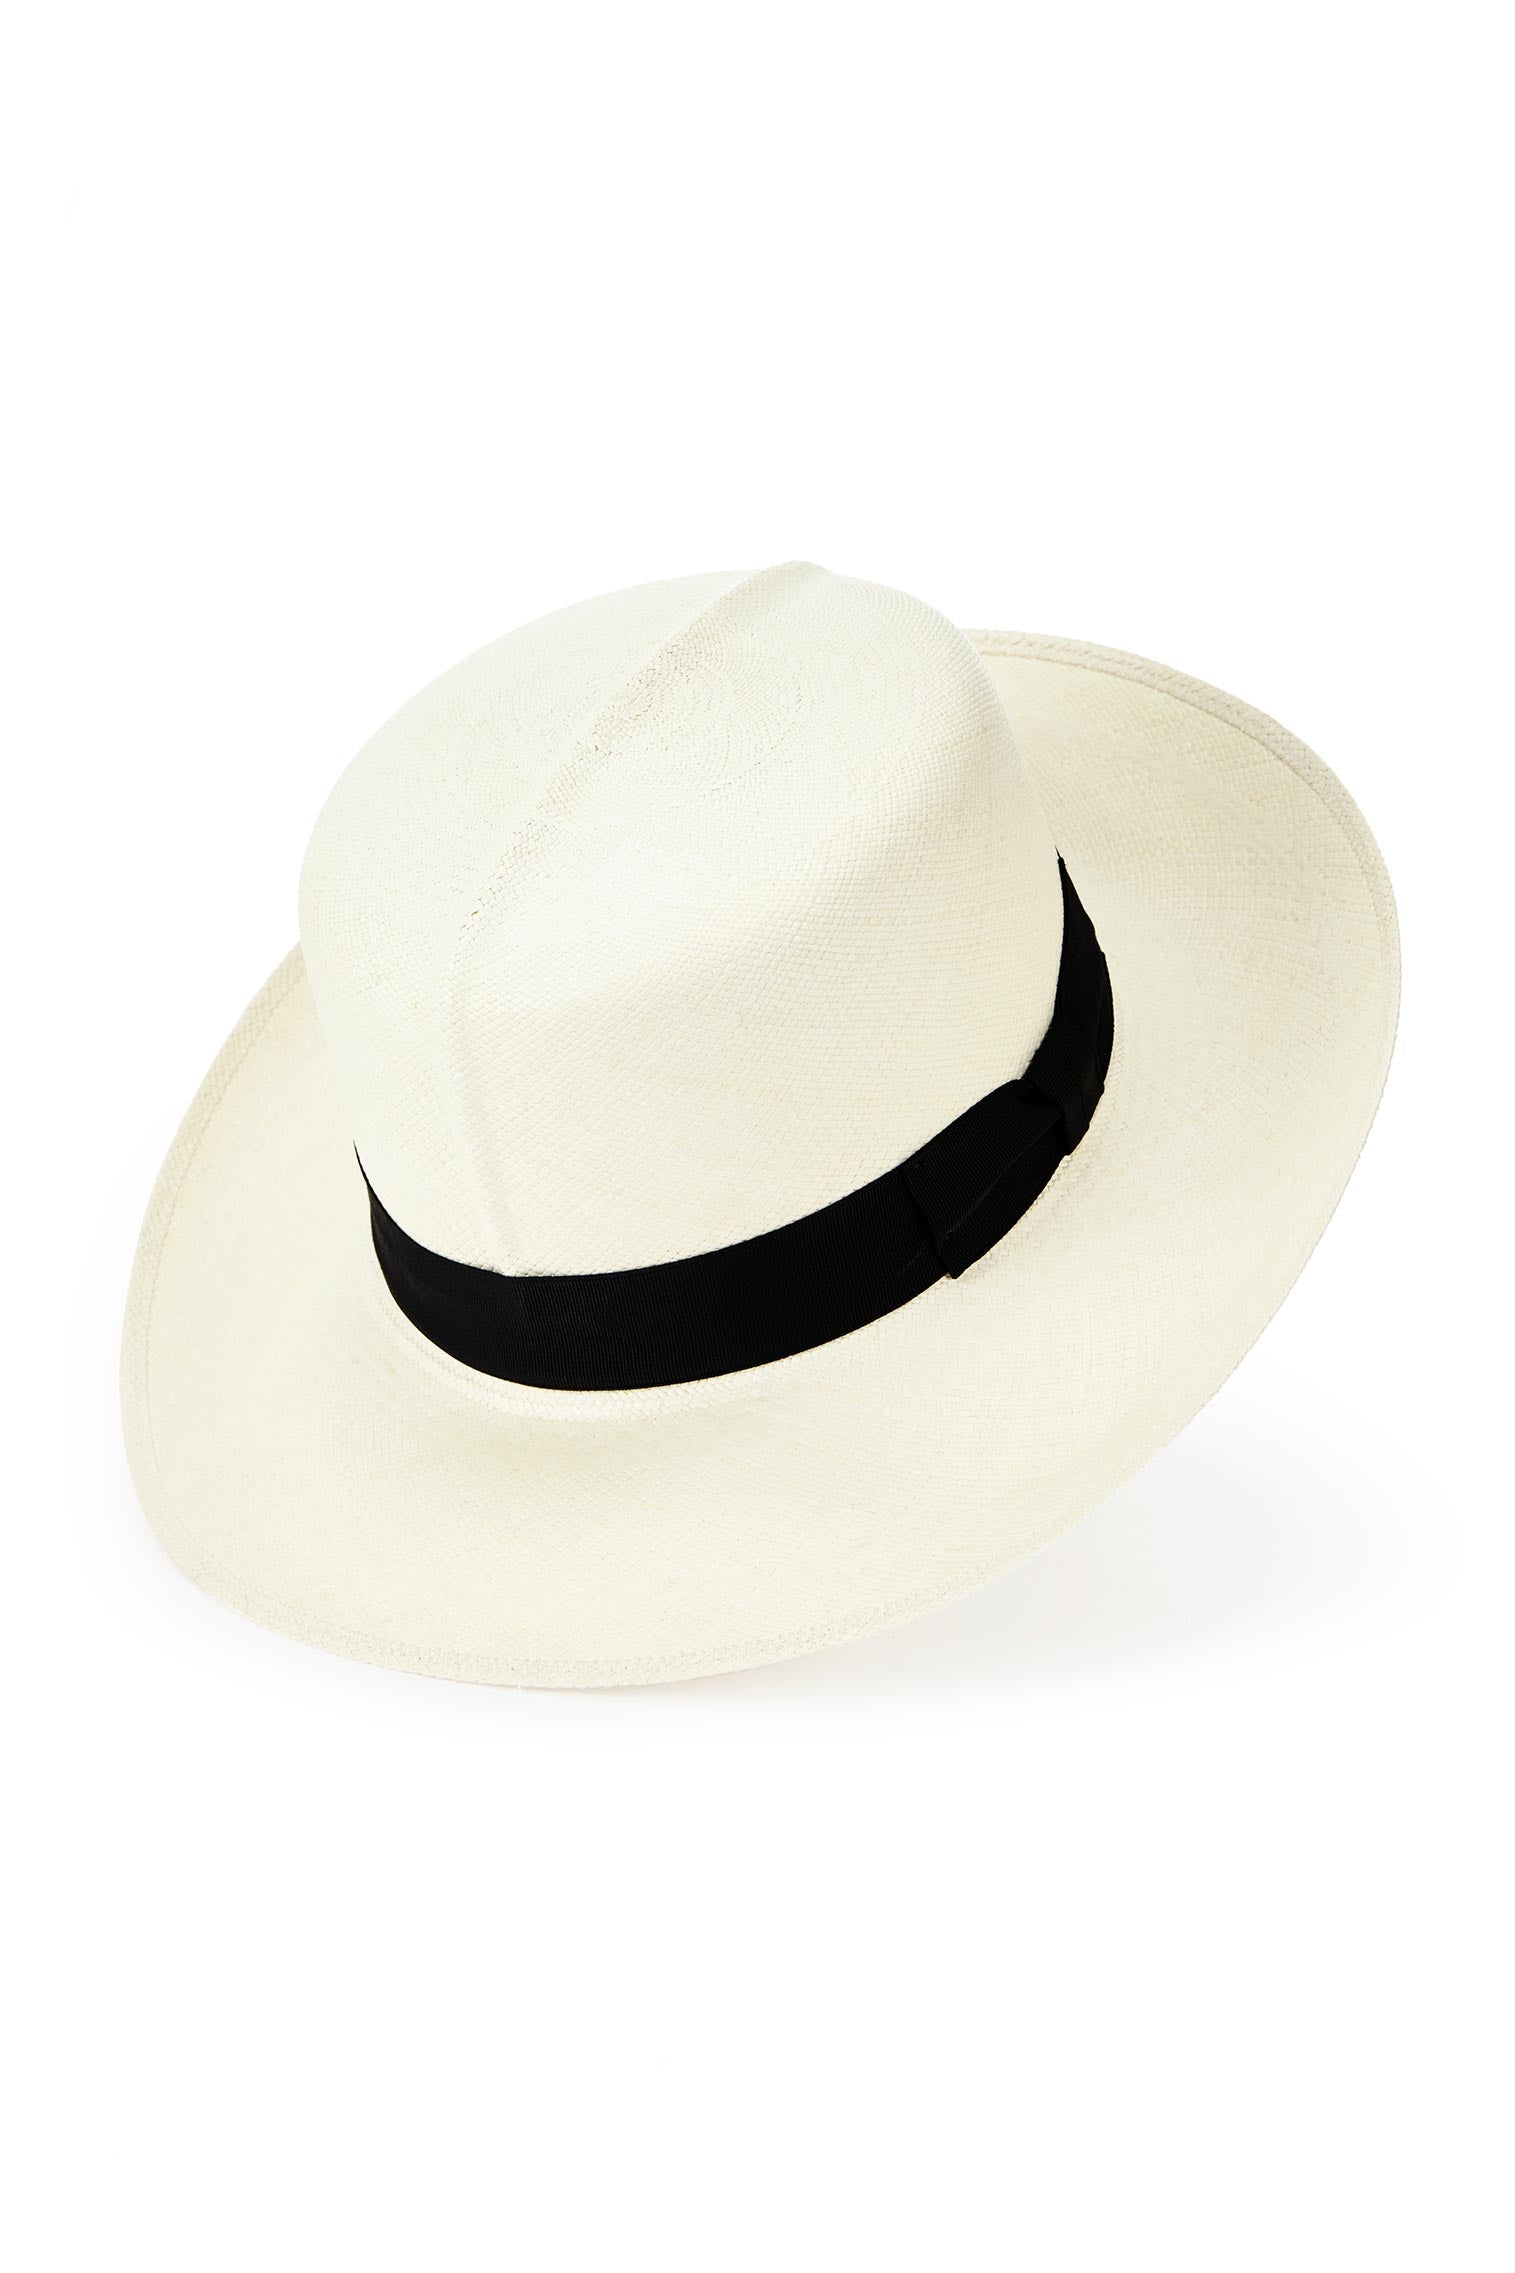 Men's Rollable Panama - Best Selling Hats - Lock & Co. Hatters London UK